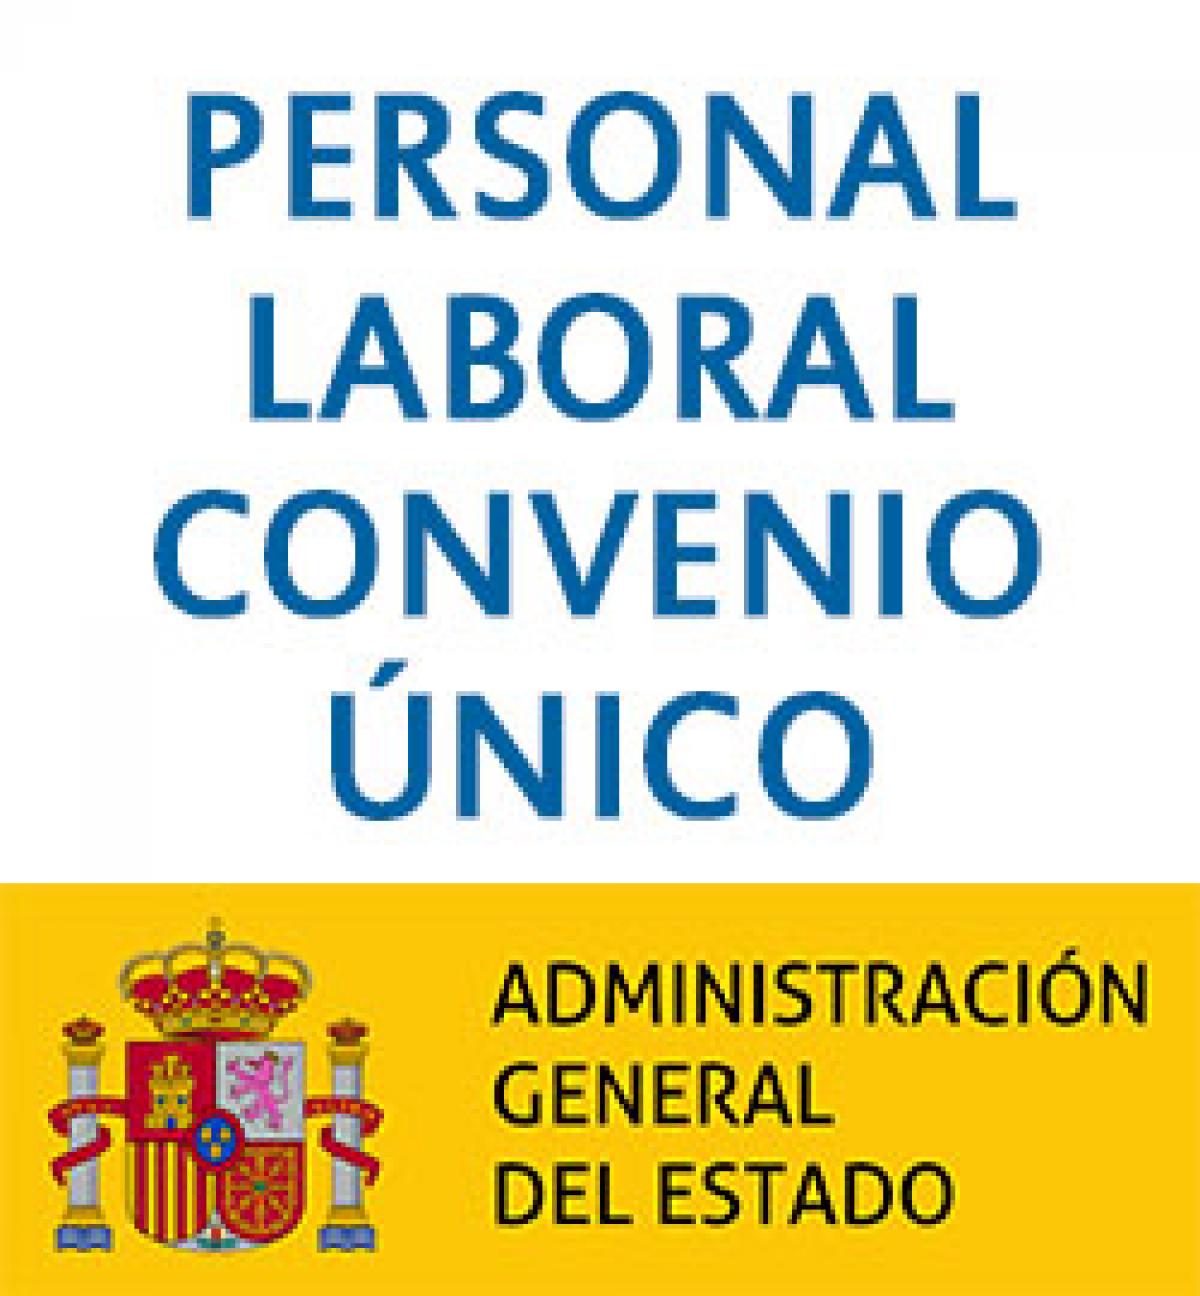 Personal Laboral Convenio Unico Administracin General del Estado